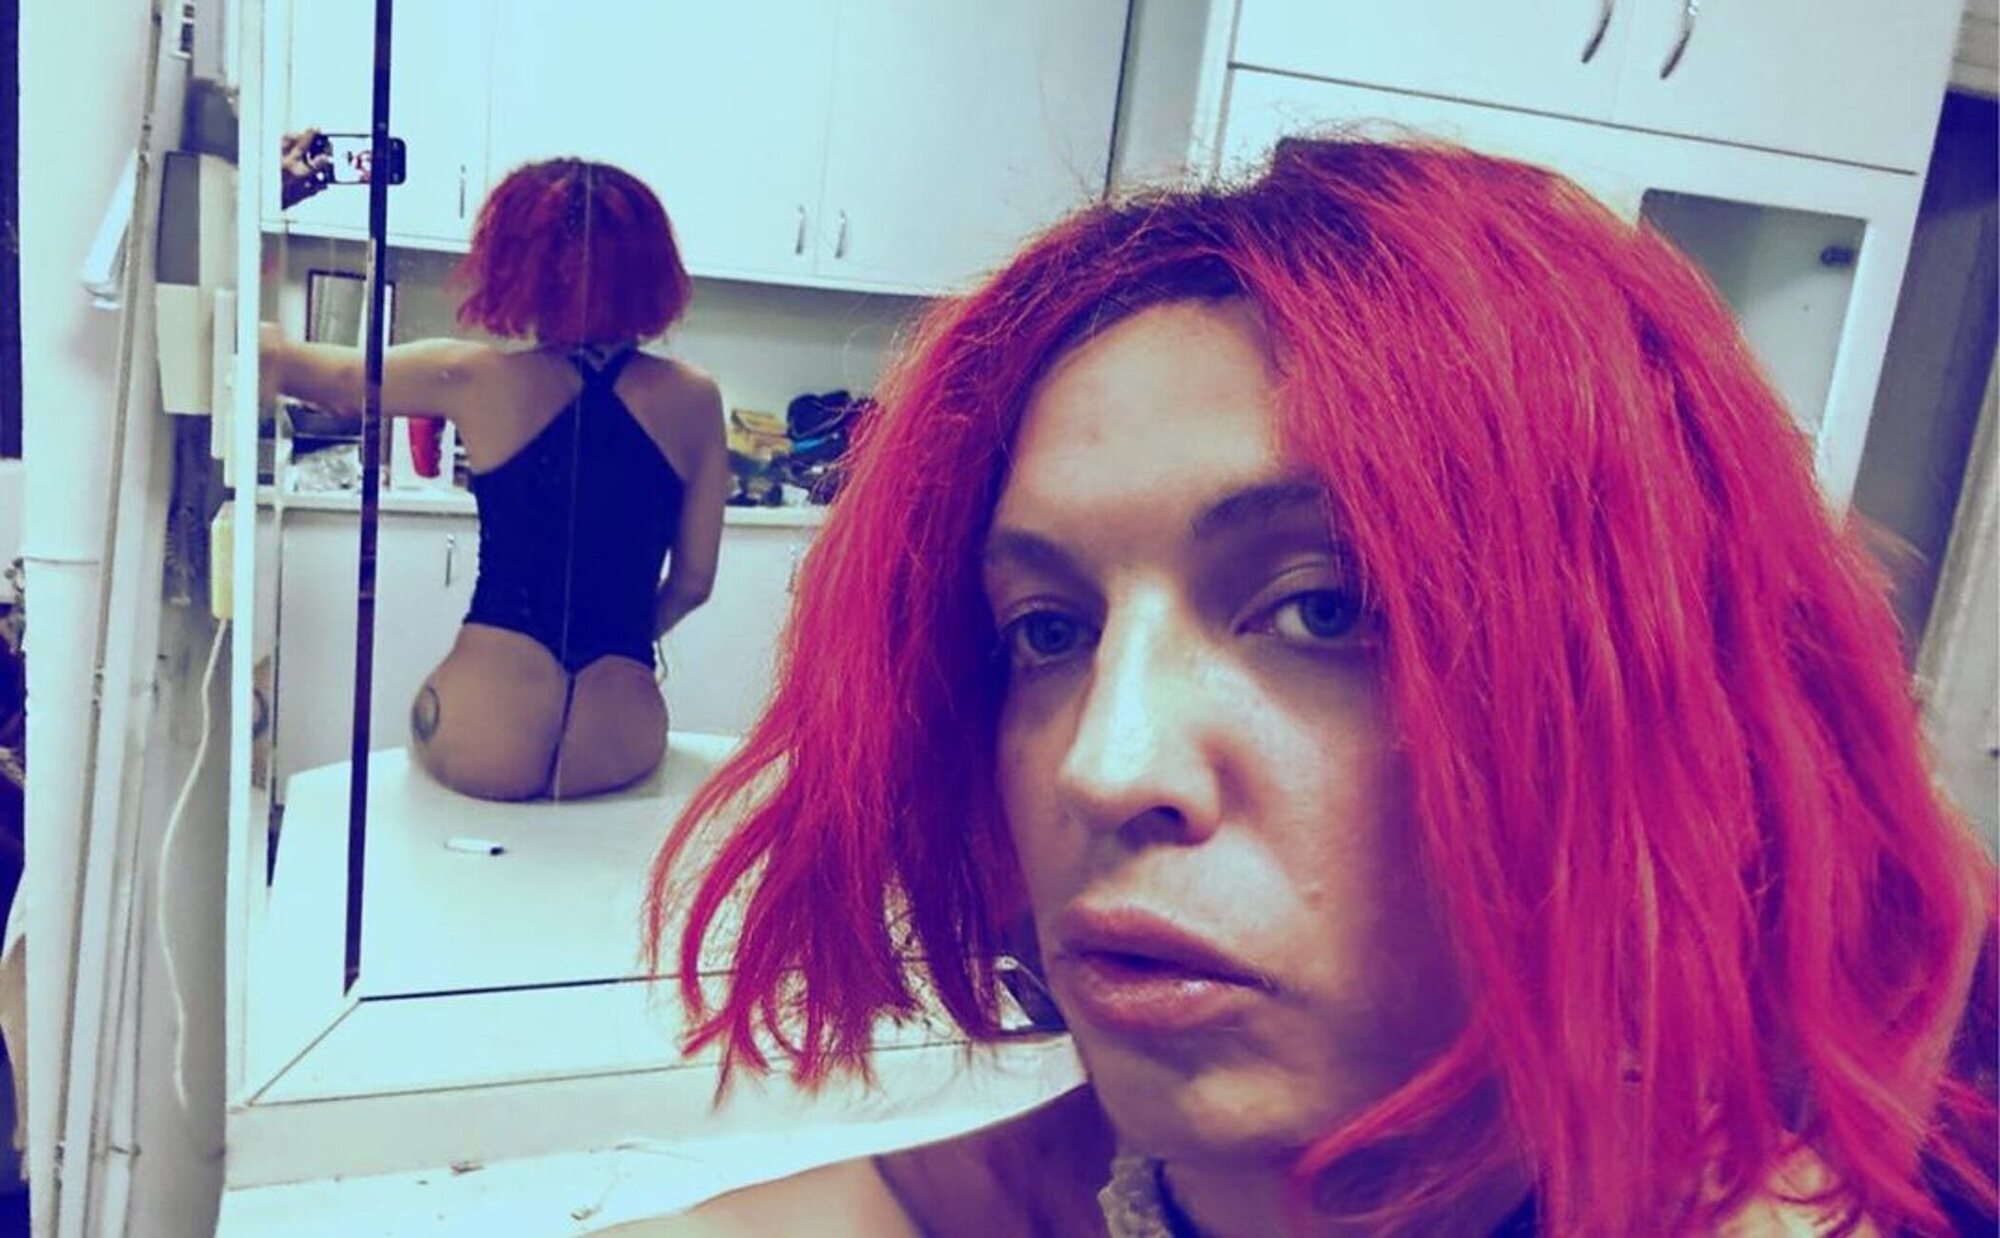 Camilo Blanes cambia su perfil de Instagram y publica fotografías con peluca roja y en ropa interior